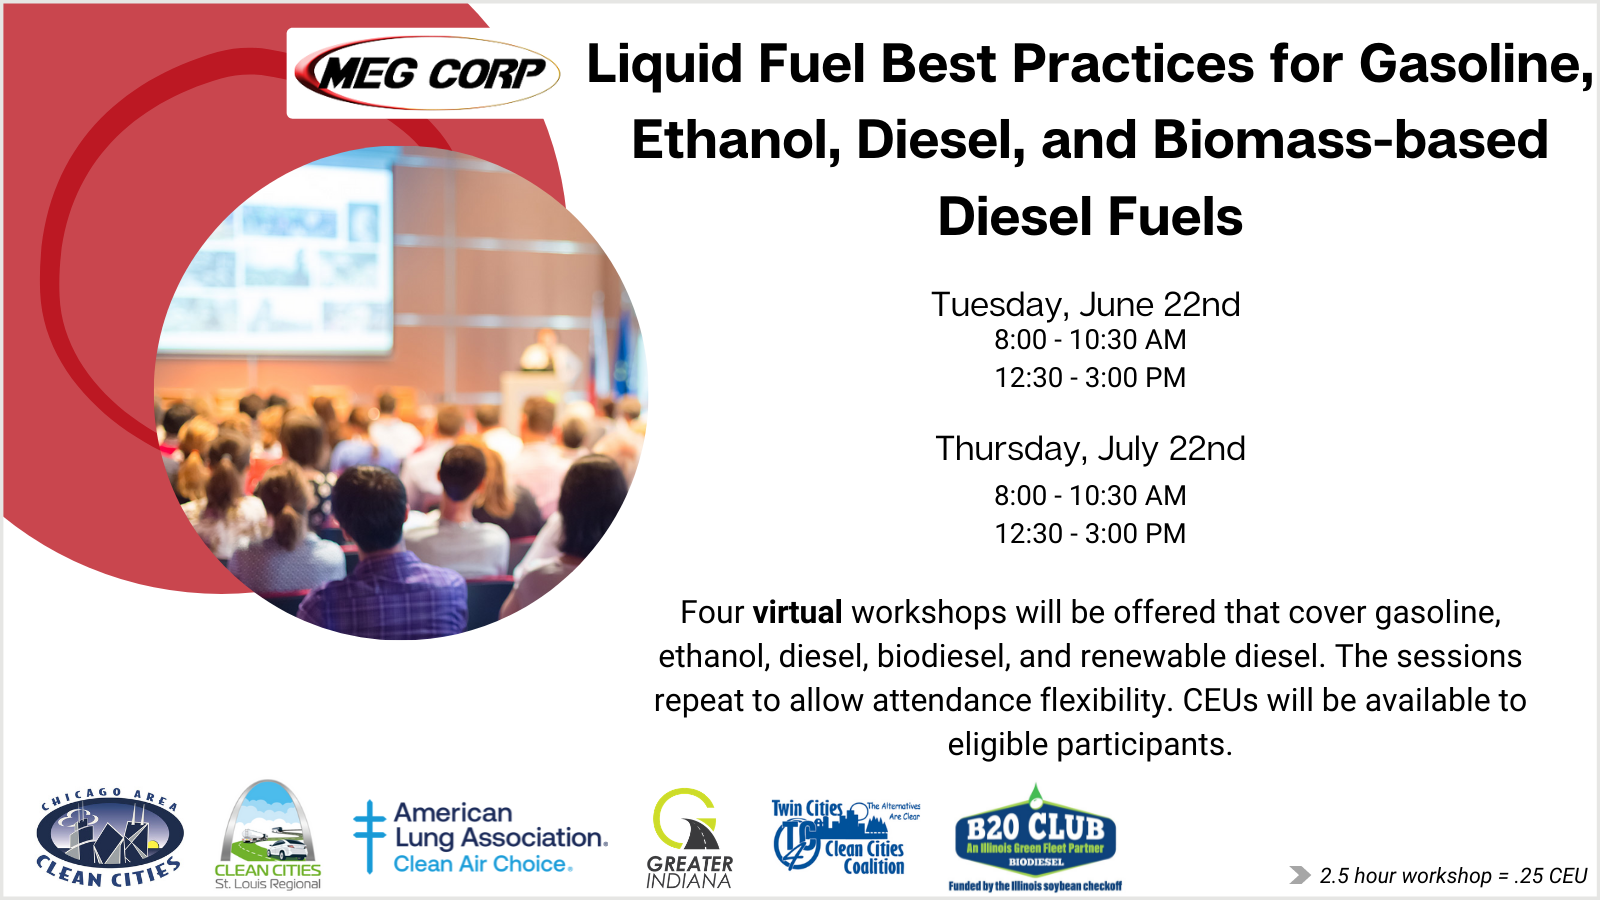 Liquid Fuels event image